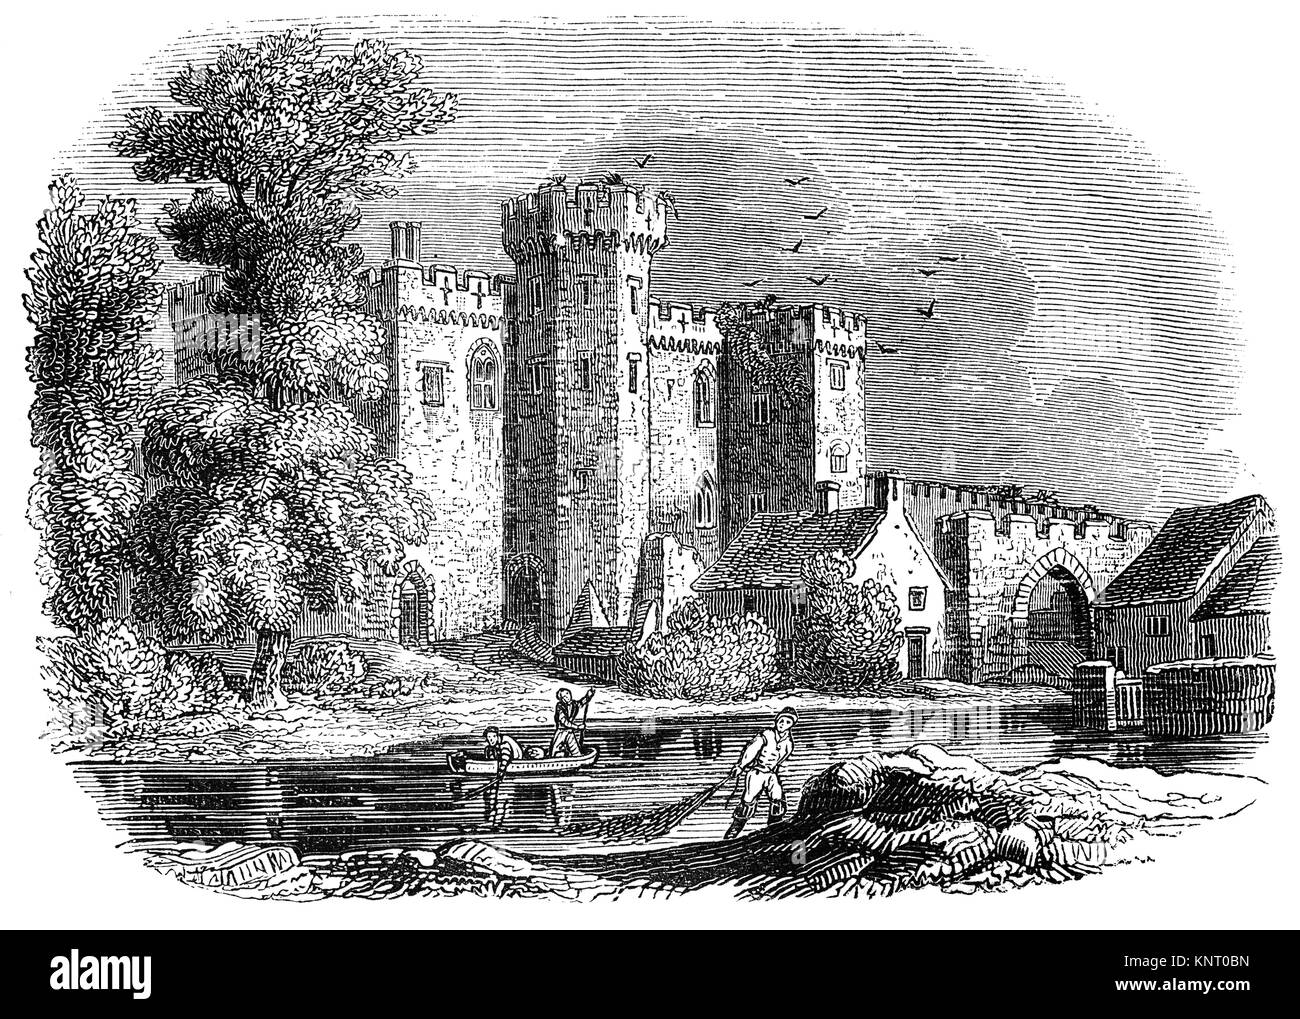 Le Château de Cardiff est un château médiéval et l'hôtel particulier de style néo-gothique victorien situé dans le centre-ville de Cardiff, Pays de Galles. Le château d'origine a été a été commandée par Guillaume le conquérant ou par Robert Fitzhamon et construite à la fin du 11e siècle par les envahisseurs normands. Au 12ème siècle le château a commencé à être reconstruit en pierre, probablement par Robert de Gloucester, avec une coquille et garder des murs défensifs érigés. La poursuite des travaux a été réalisée par Richard de Clare, 6 Comte de Gloucester, dans la deuxième moitié du 13e siècle. Le Château de Cardiff a été à plusieurs reprises être impliqués dans les conflits Banque D'Images